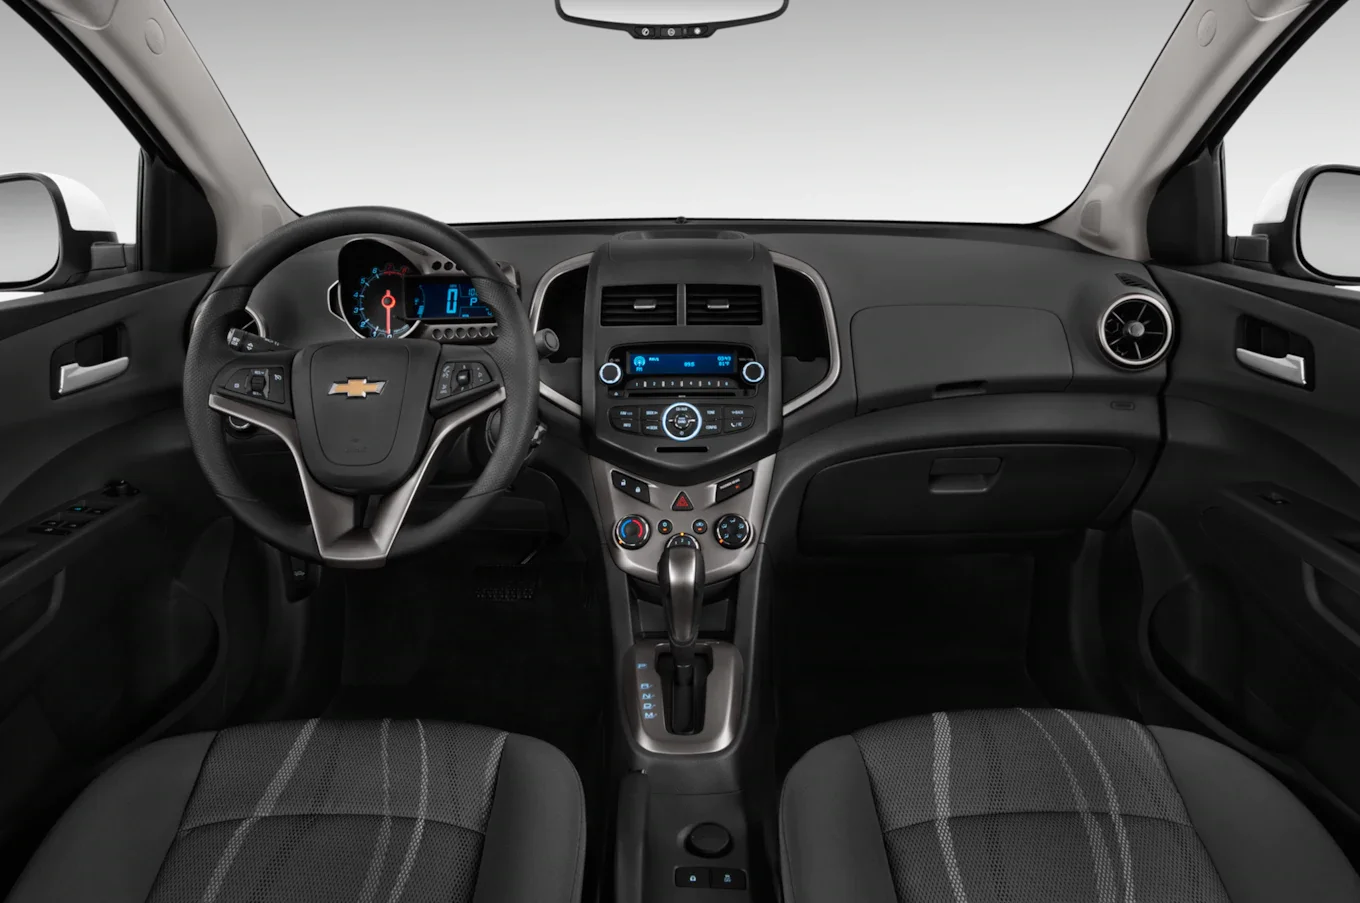 2015 Chevy Sonic Interior